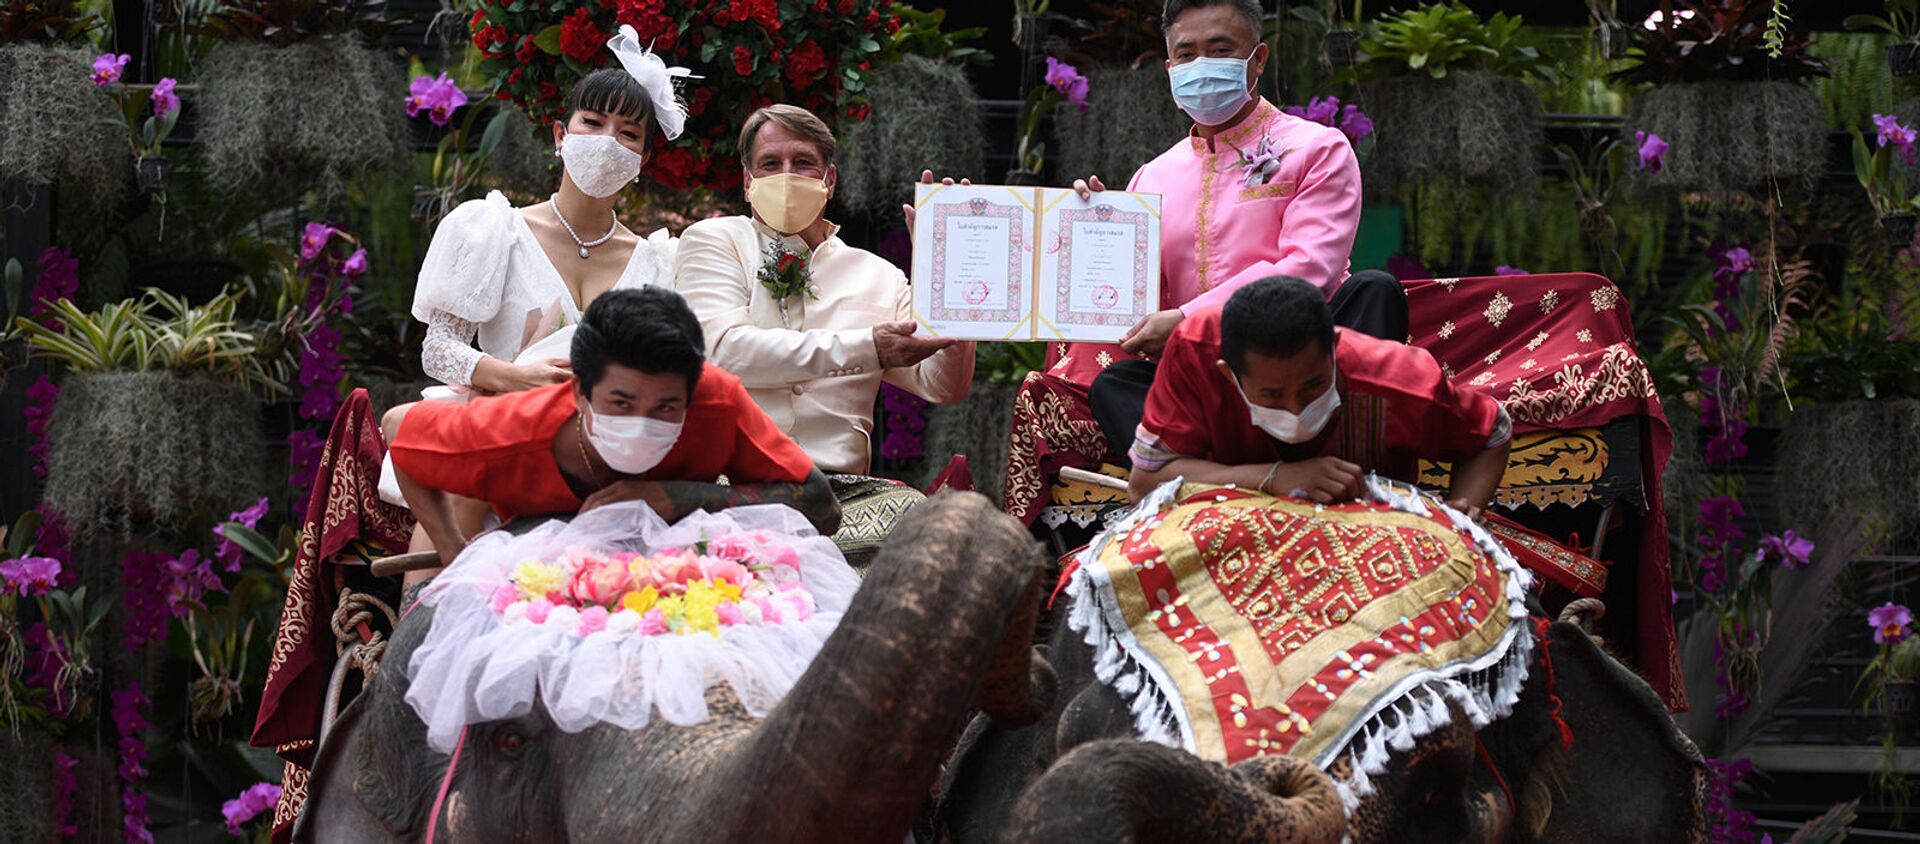 Пара получает свидетельство о браке от провинциального чиновника во время прогулки на слонах во время празднования Дня Святого Валентина в Таиланде - Sputnik Արմենիա, 1920, 14.02.2021